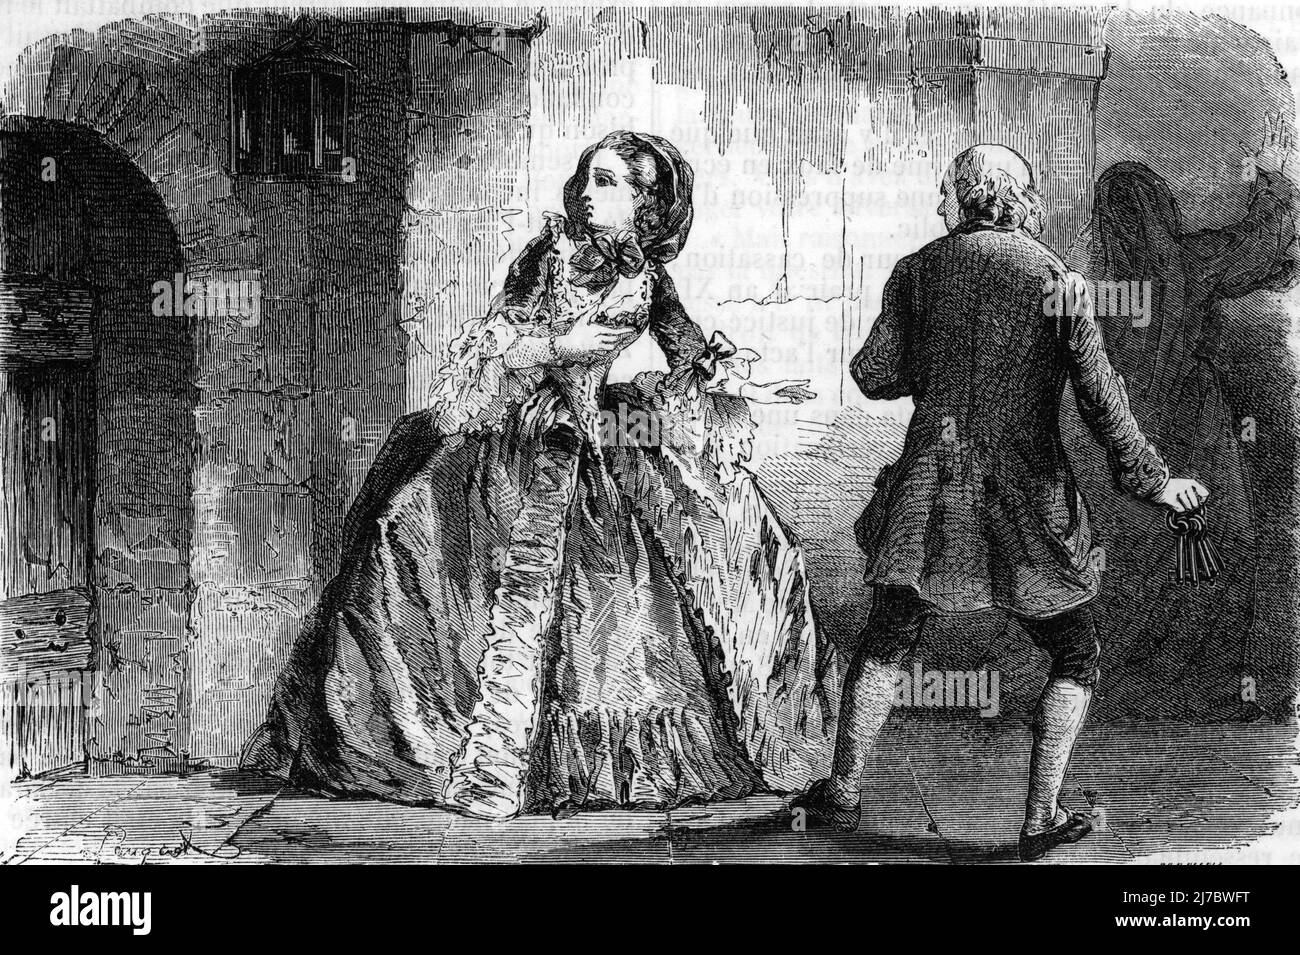 Le mystere de la marquise de Douhault - une femme pretend etre la marquise est liberee de l'hopital de la salpetriere en juillet 1789 -Gravure tiree de 'Causes celebres' de Fouquier 1861 Collection privee Stock Photo